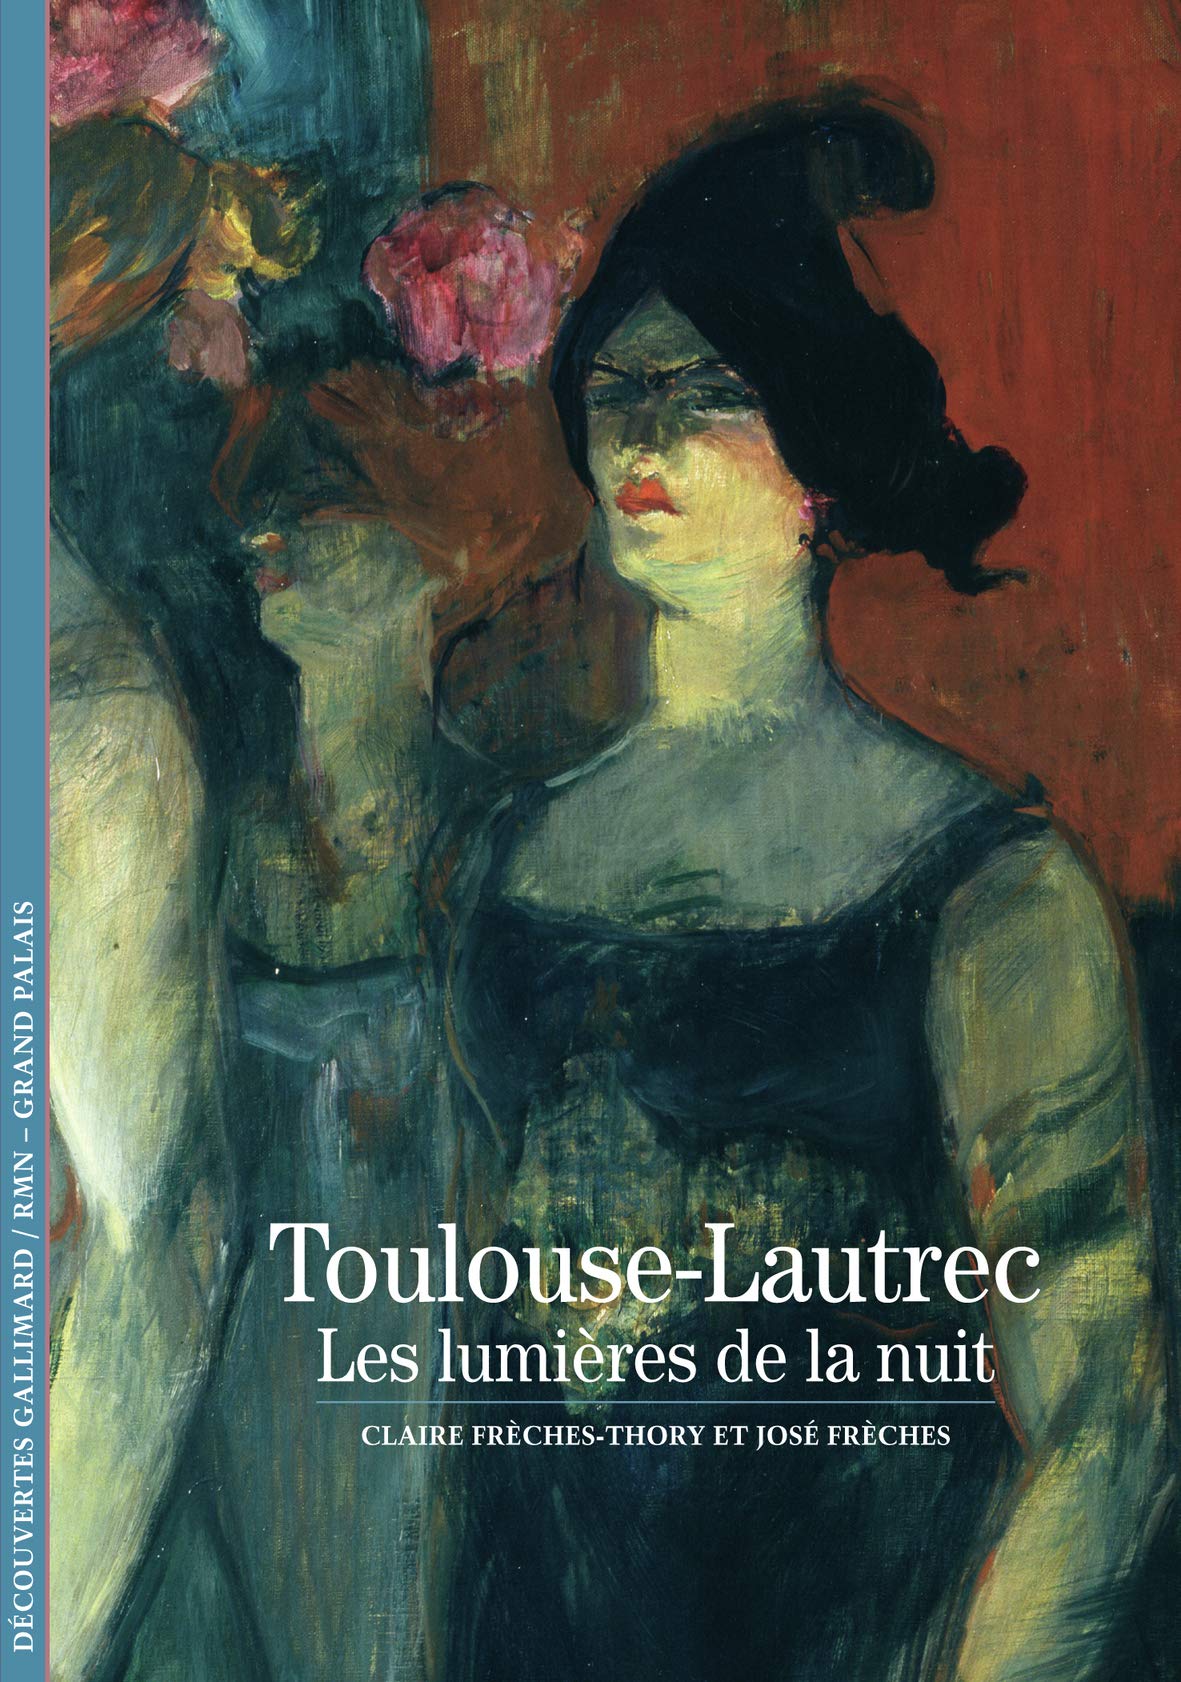 Toulouse-Lautrec. Les lumieres de la nuit